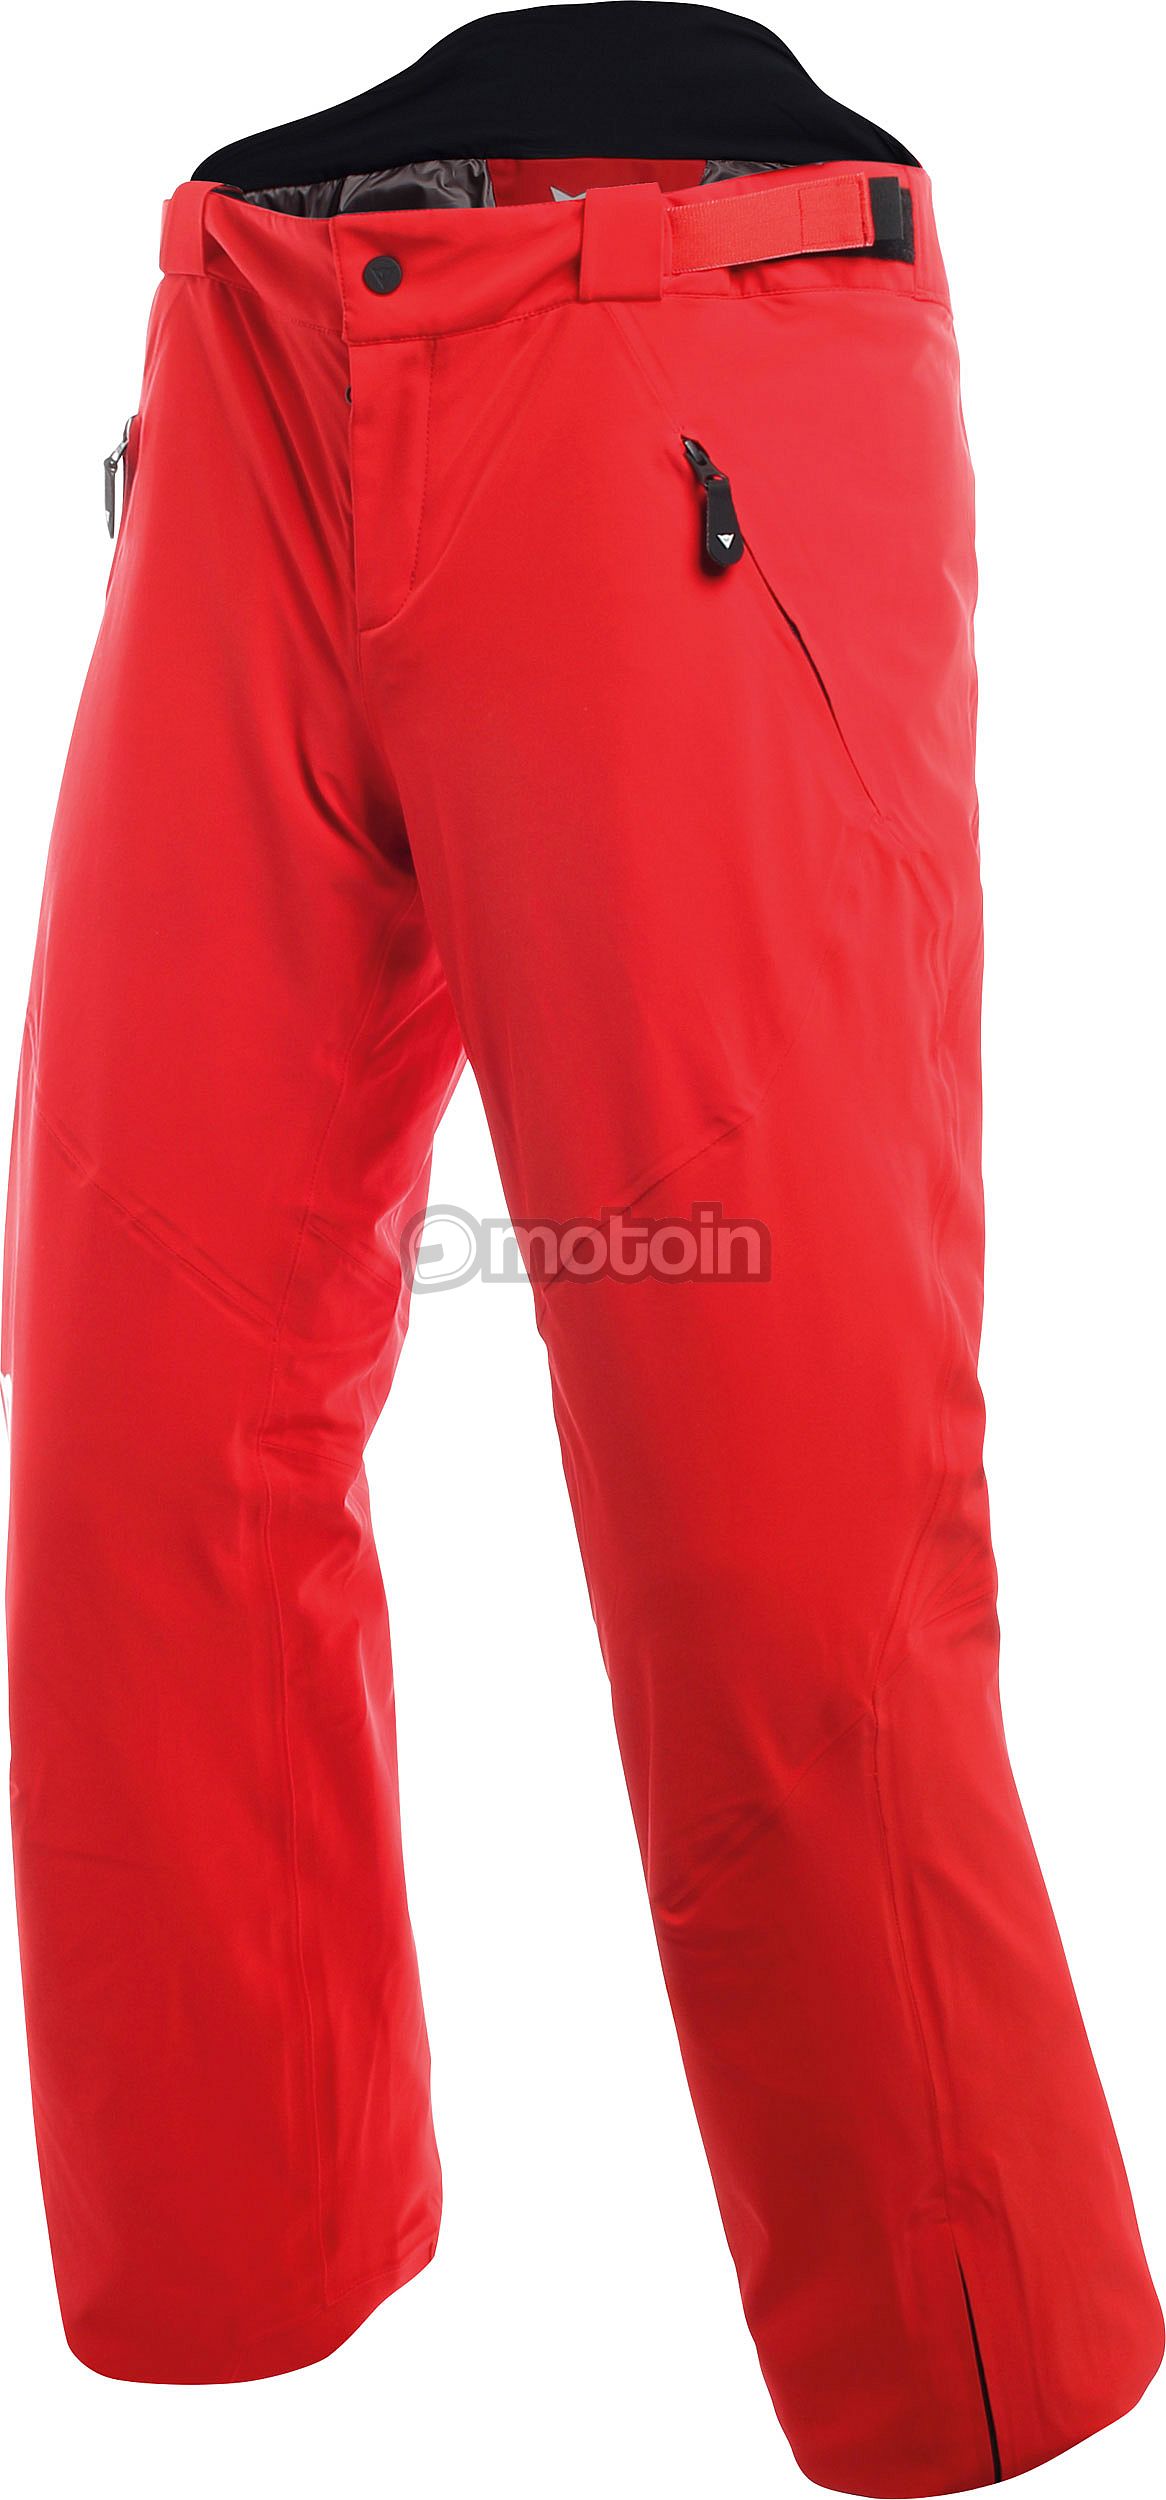 Dainese HP2 P M1, pantalon textile Dermizax EV